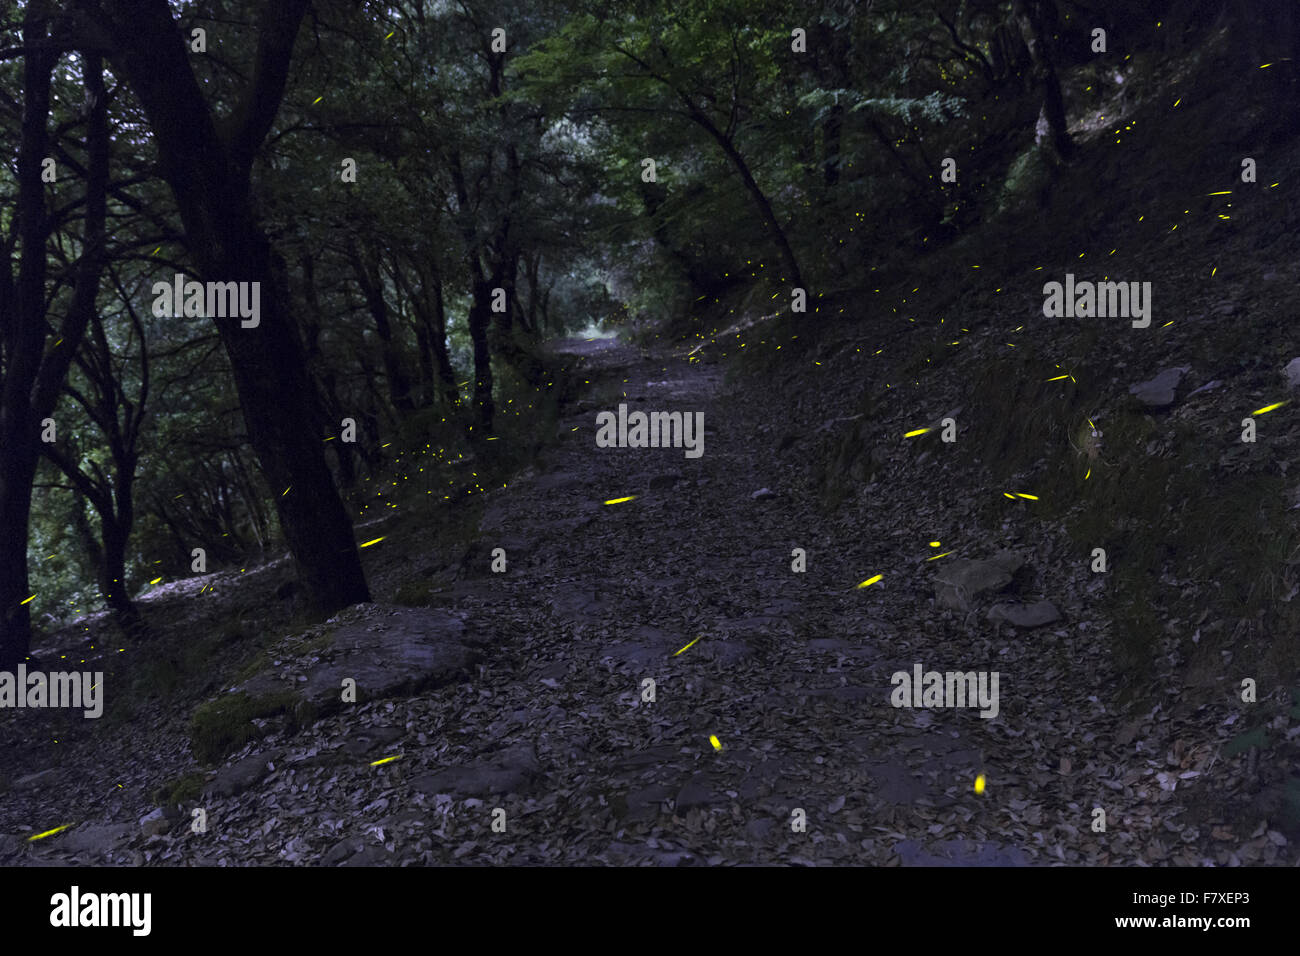 Zentralen europäischen Glühwürmchen (Lamprohiza Splendidula) Erwachsene, während des Fluges, Biolumineszenz Licht Wege im Wald bei Nacht, Montallegro, in der Nähe von Rapallo, Ligurien, Italien, Juni Stockfoto